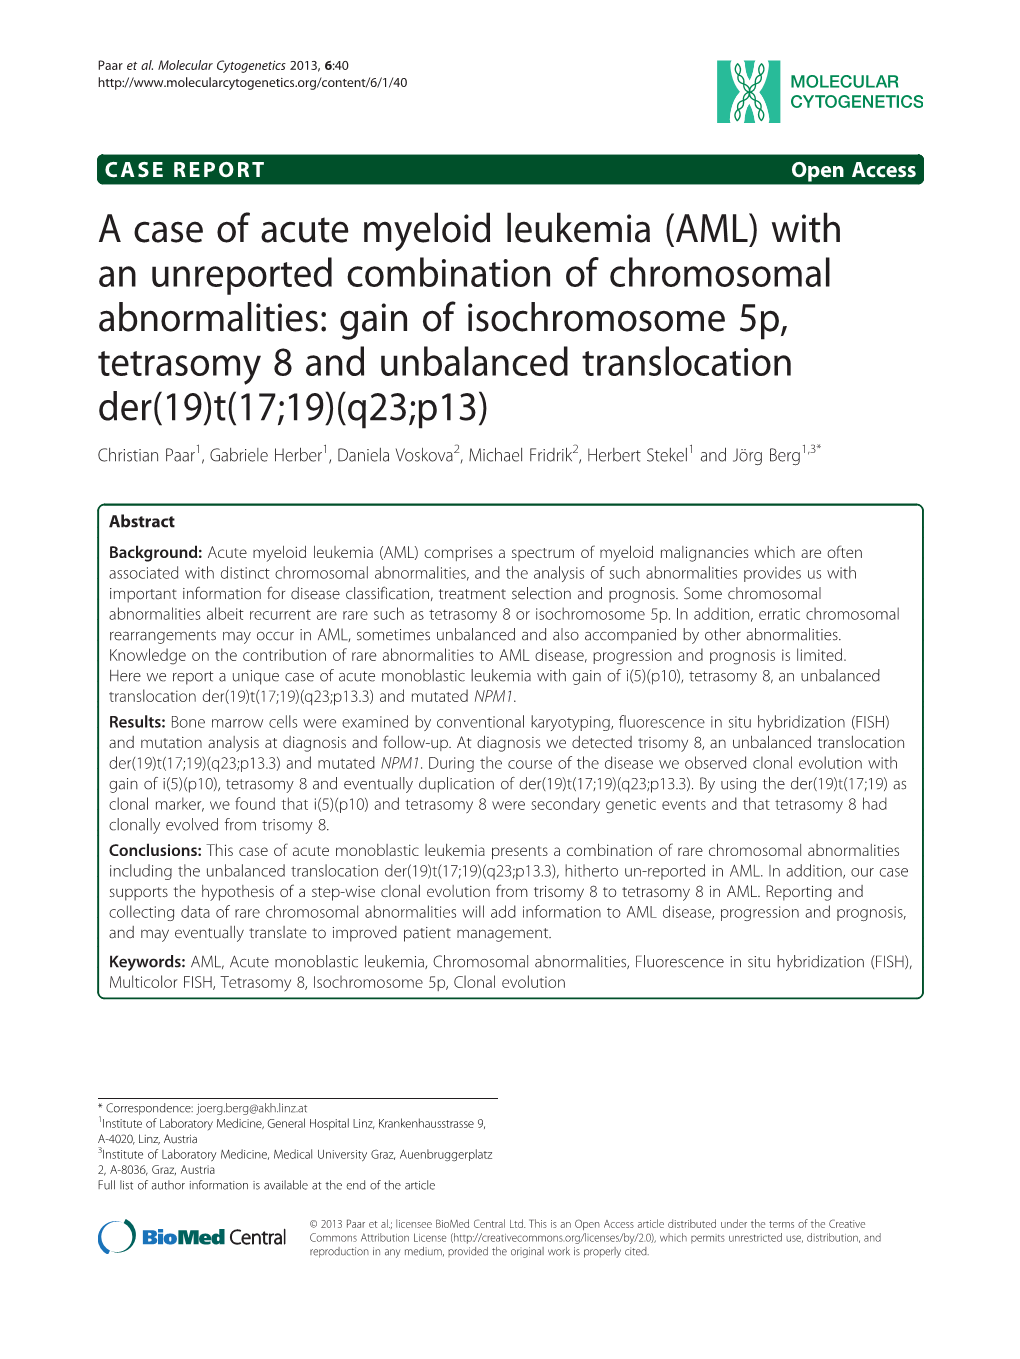 A Case of Acute Myeloid Leukemia (AML)